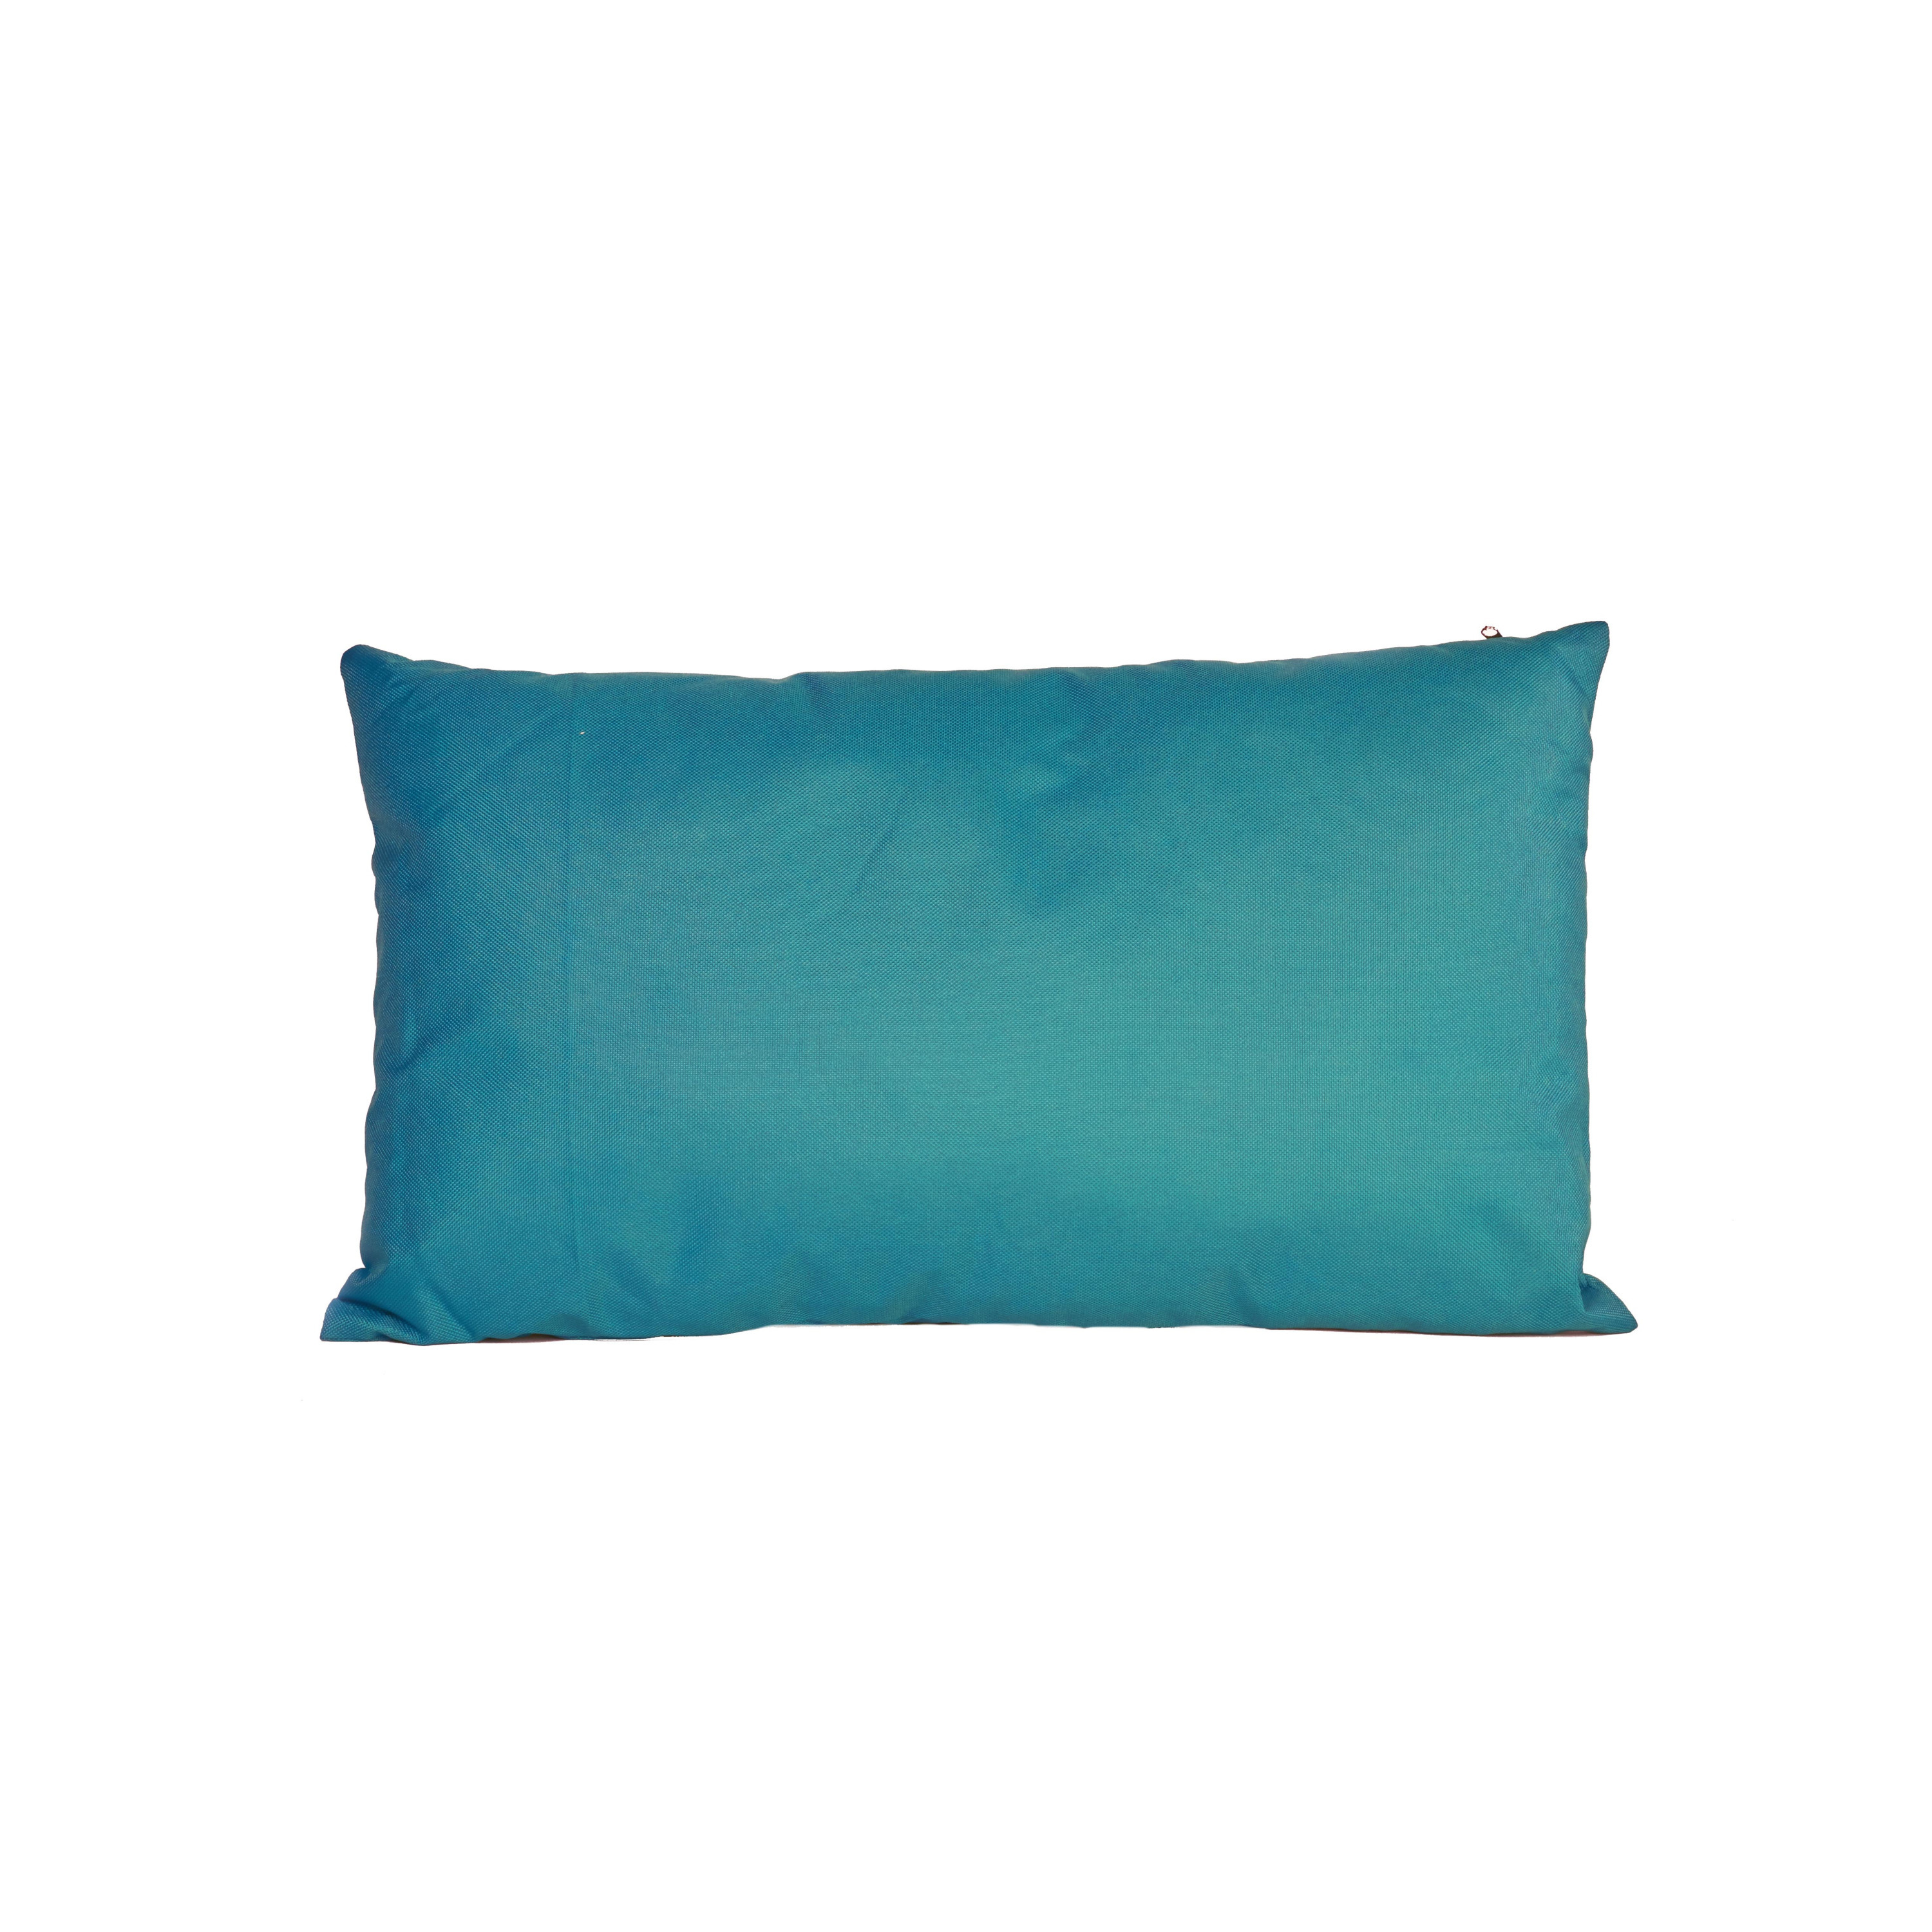 Bank-sier kussens voor binnen en buiten in de kleur petrol blauw 30 x 50 cm